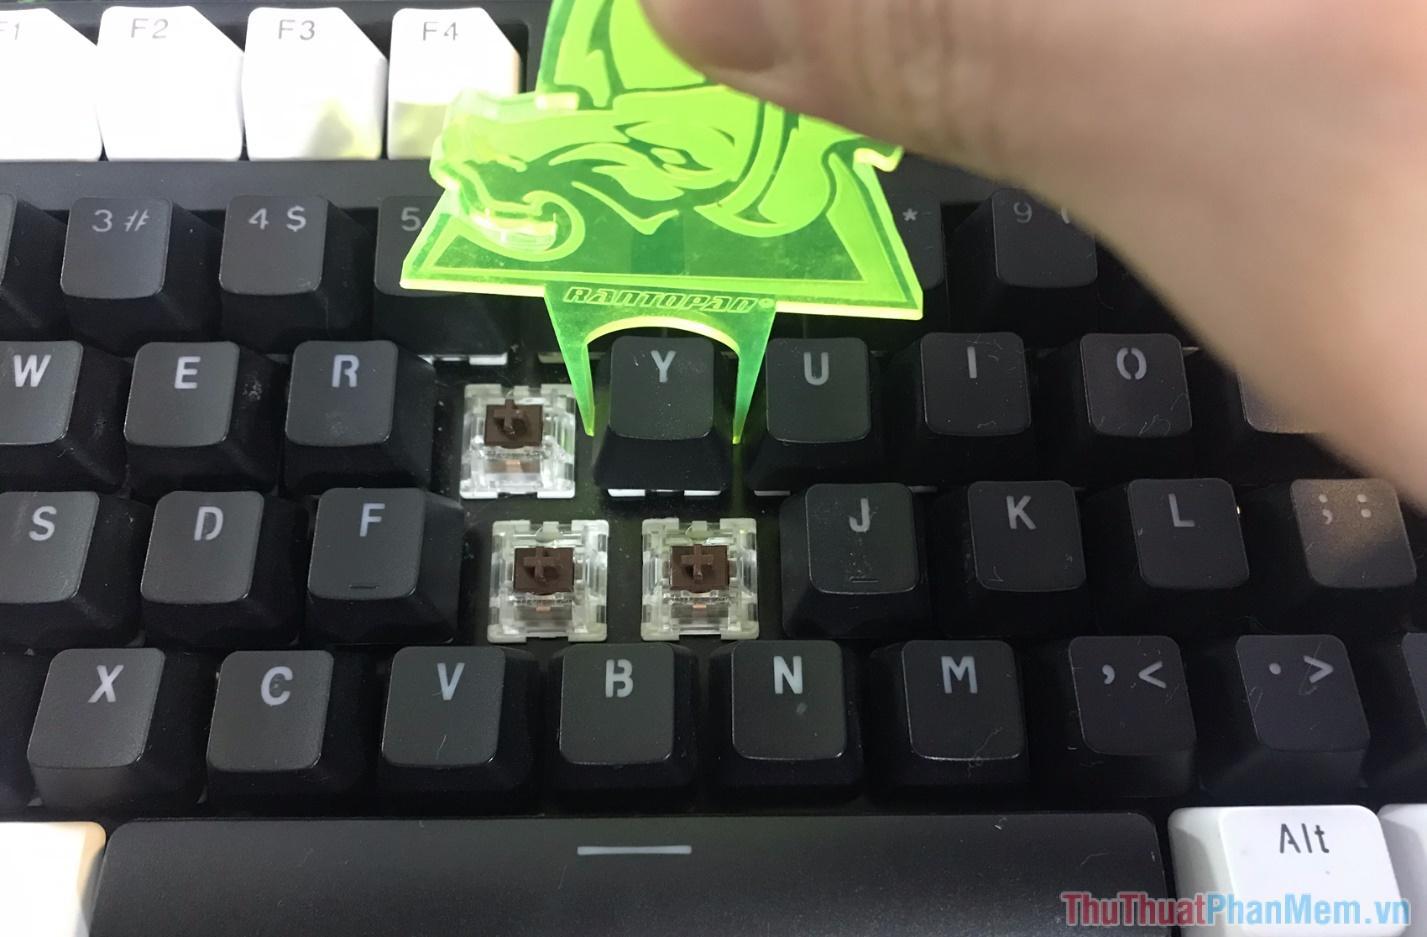 Sử dụng Keypuller hoặc tay để tháo Keycap ra khỏi bàn phím